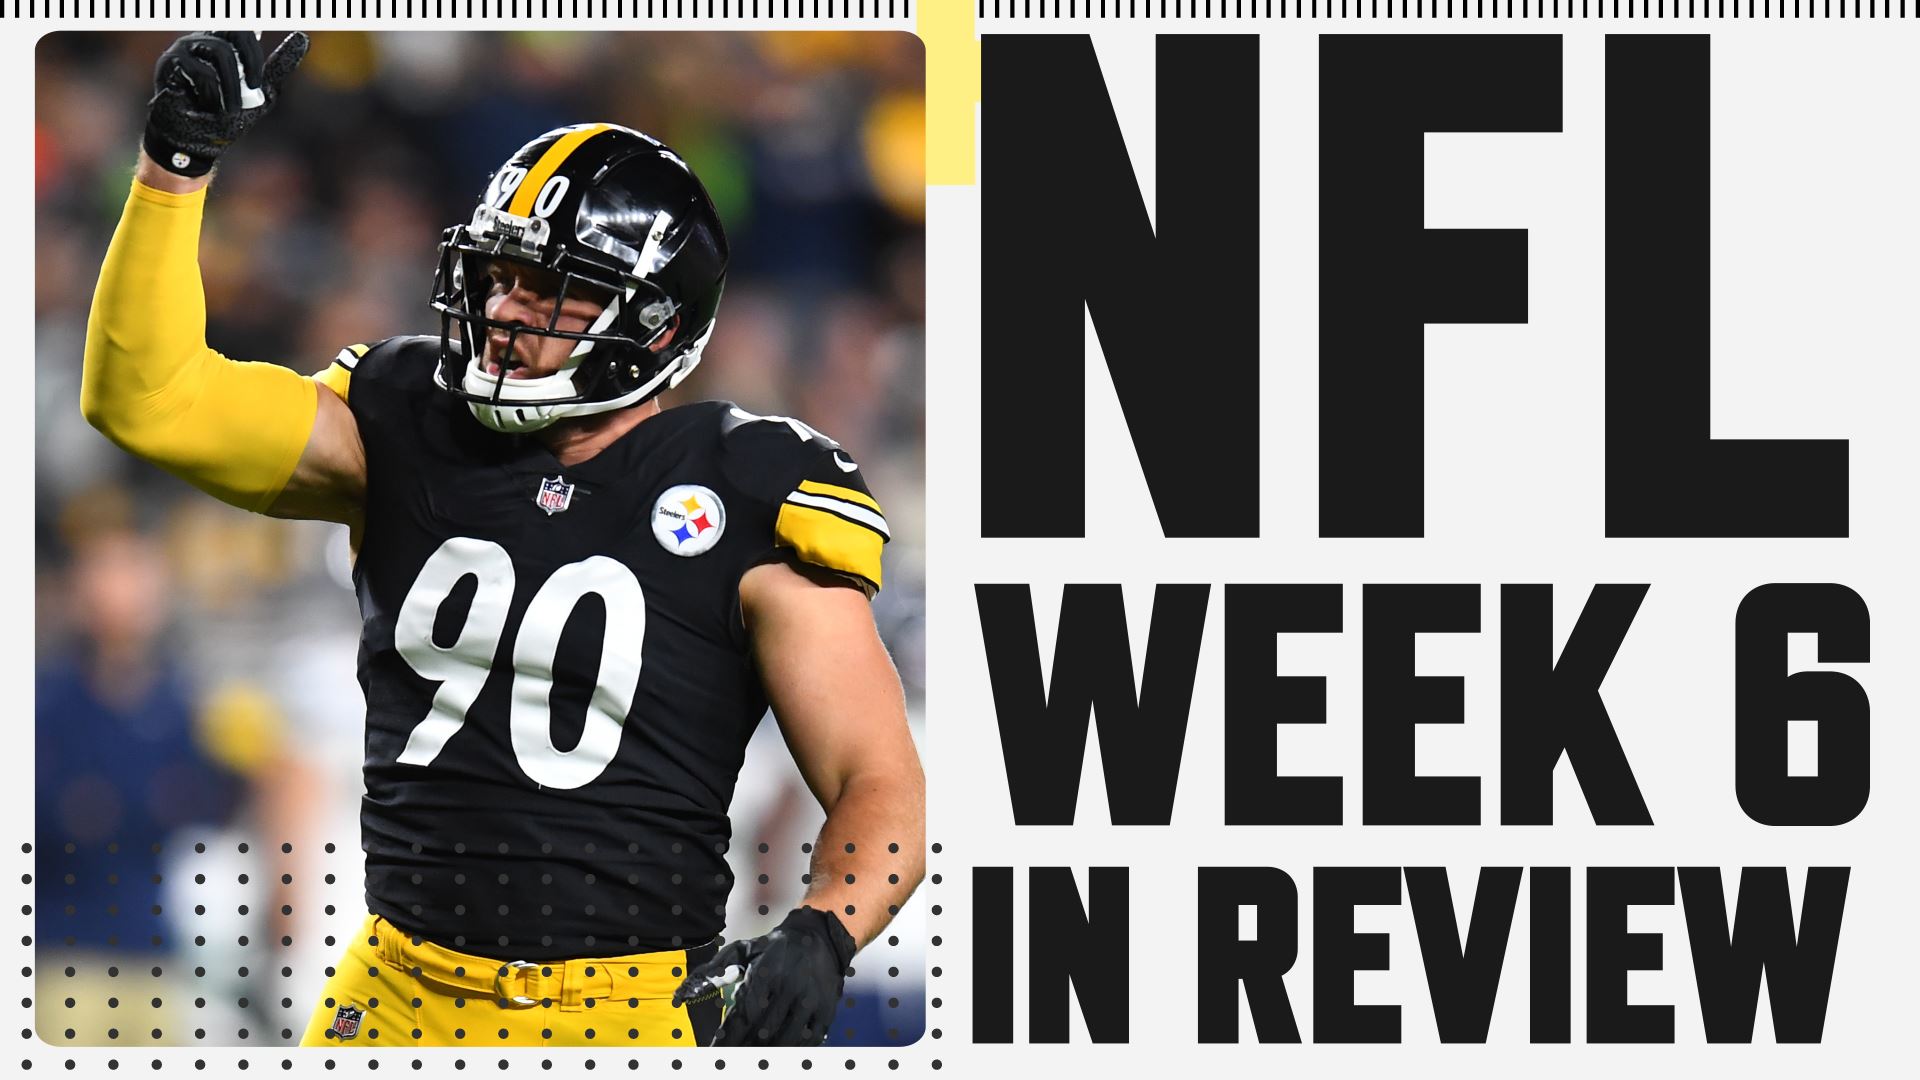 NFL Week 10 Football Sunday Recap – NBC10 Philadelphia